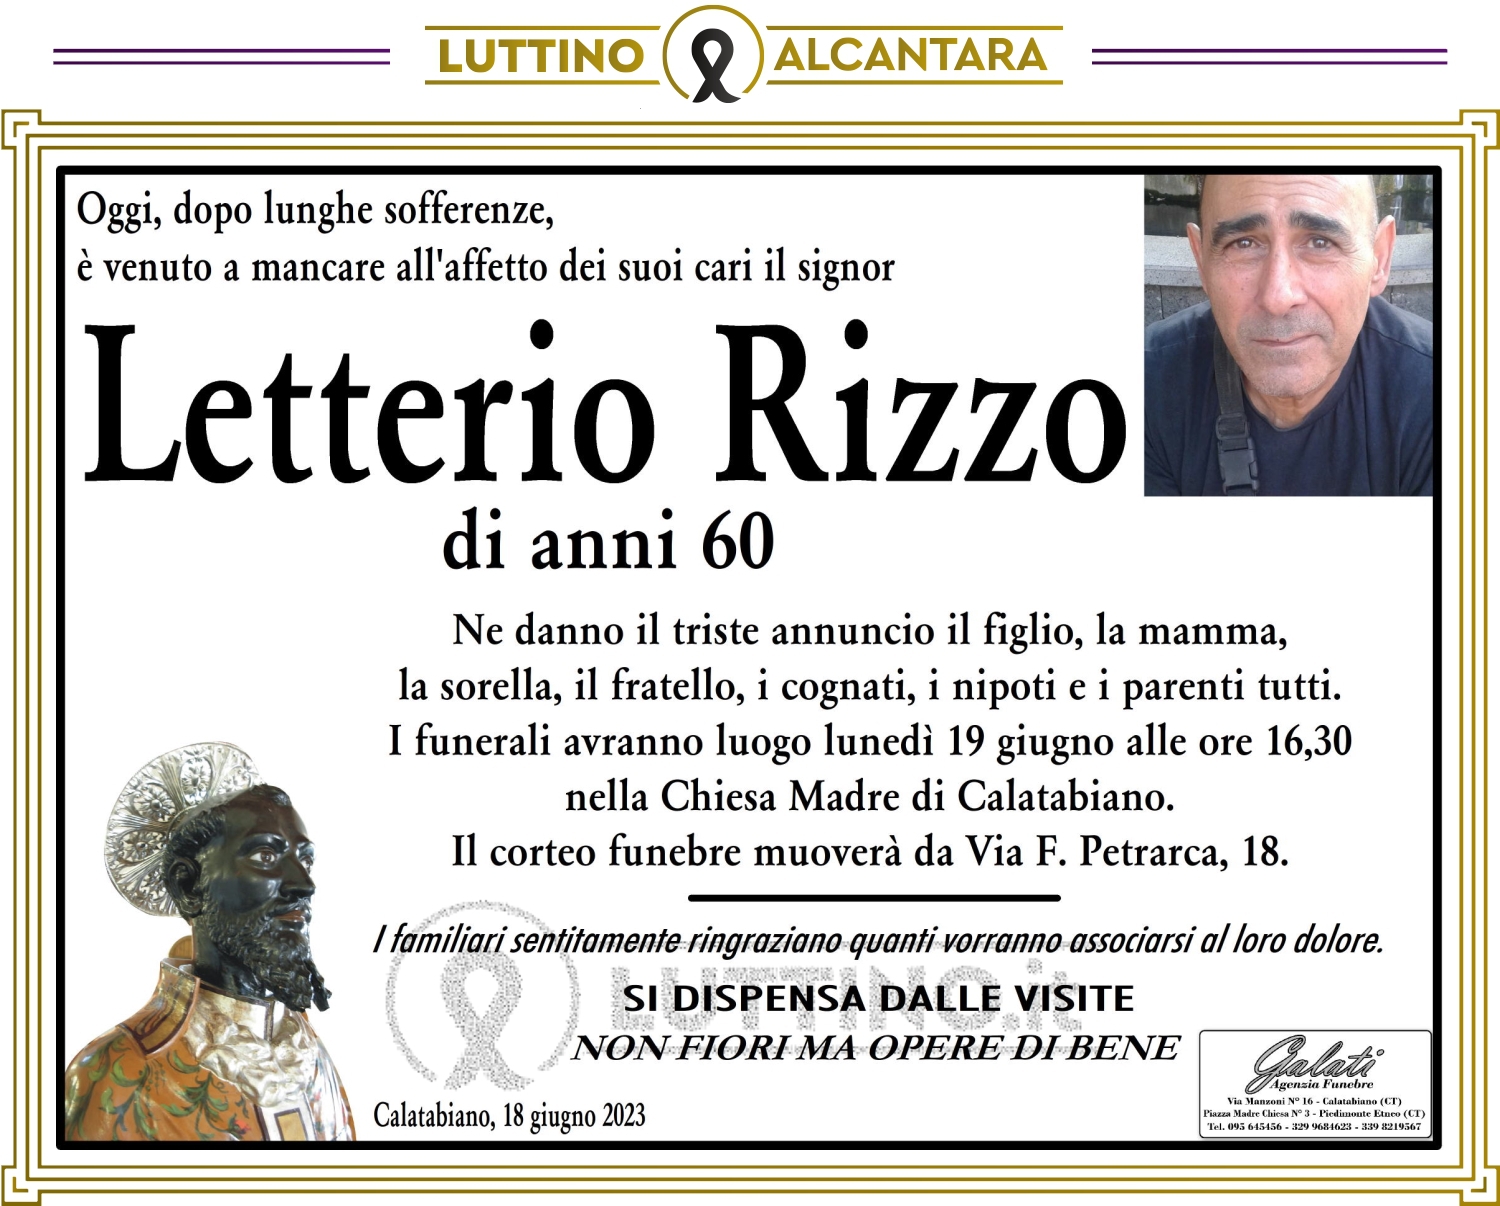 Letterio Rizzo